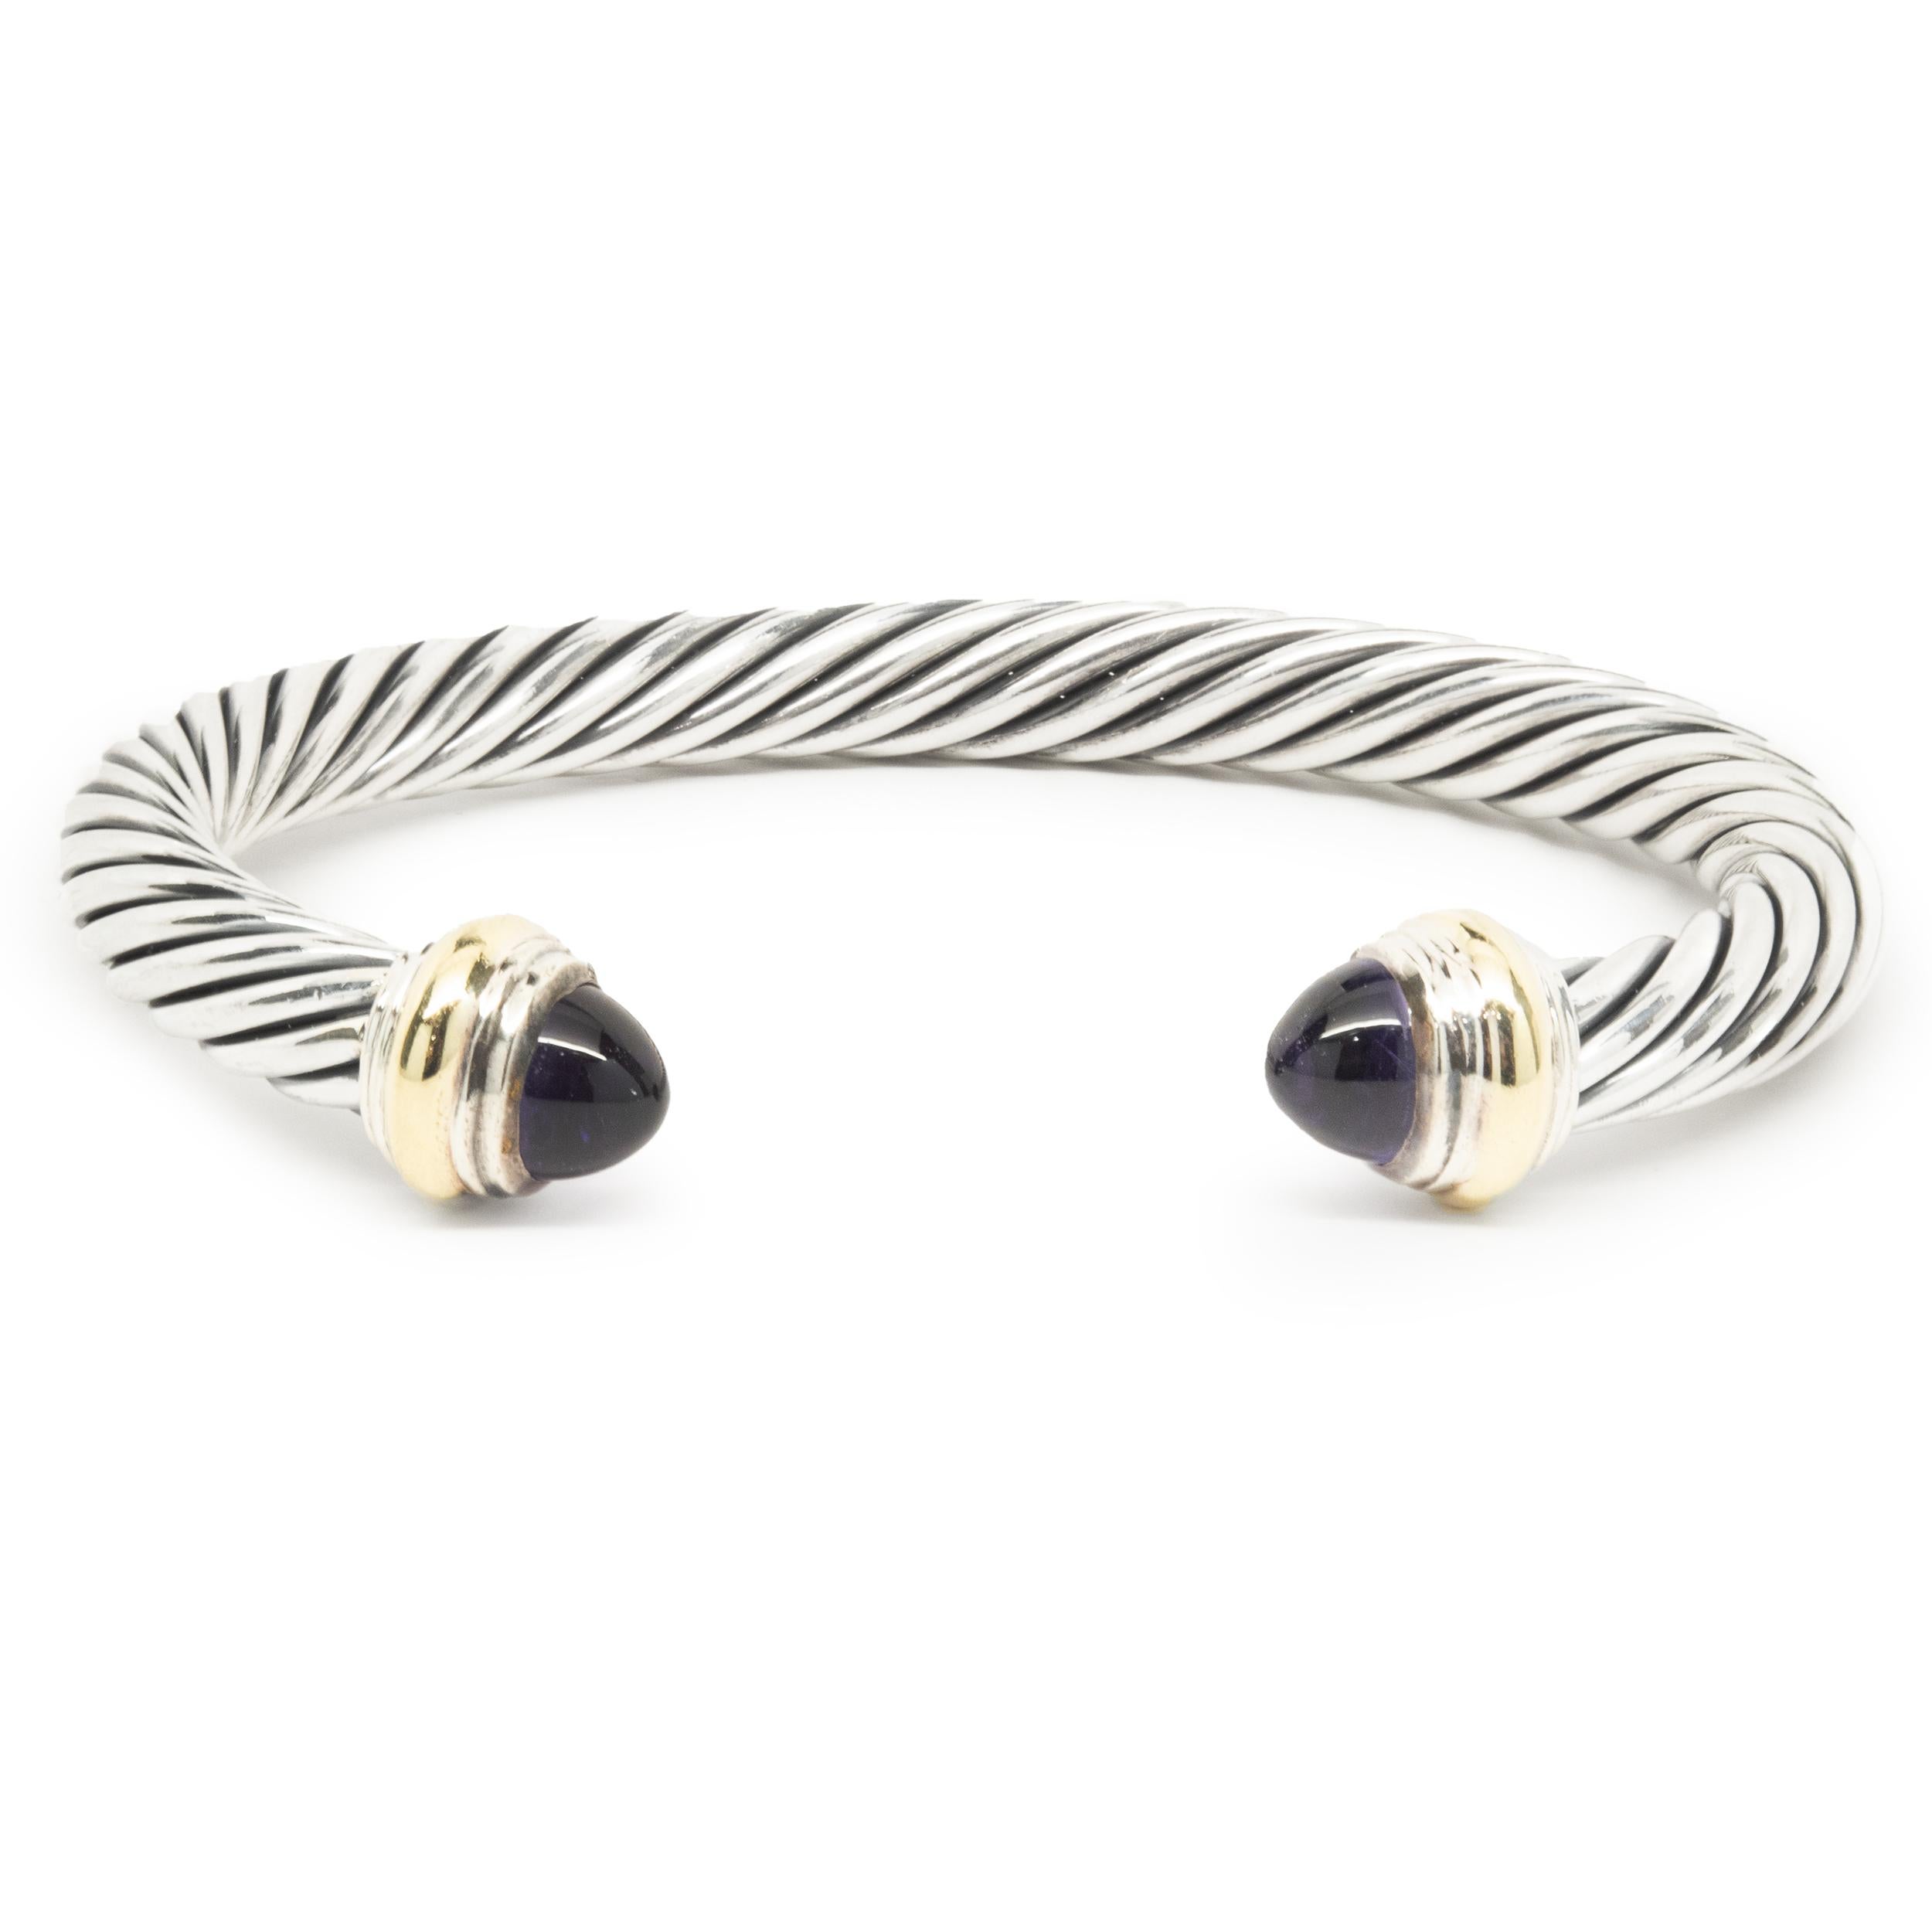 silver cable bracelet